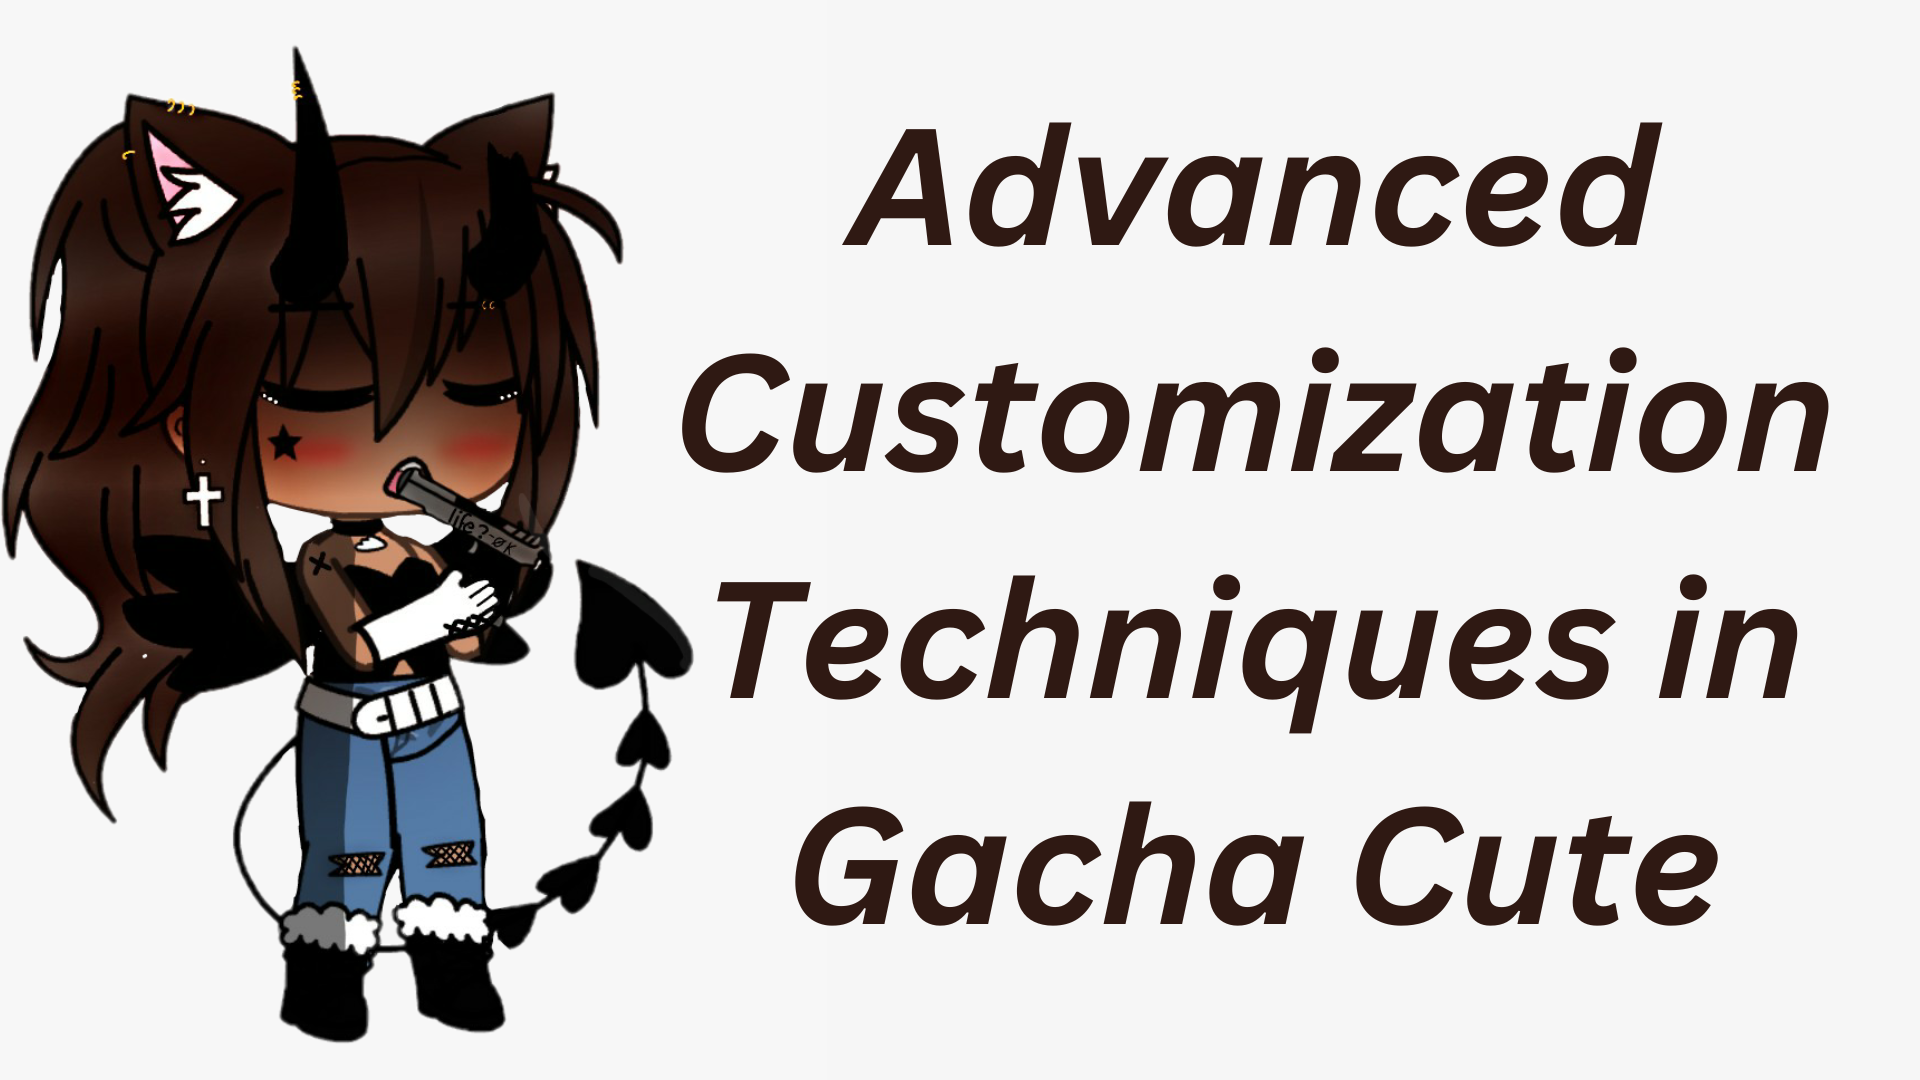 Advanced Gacha Cute Customization Techniques in - Gacha Cute